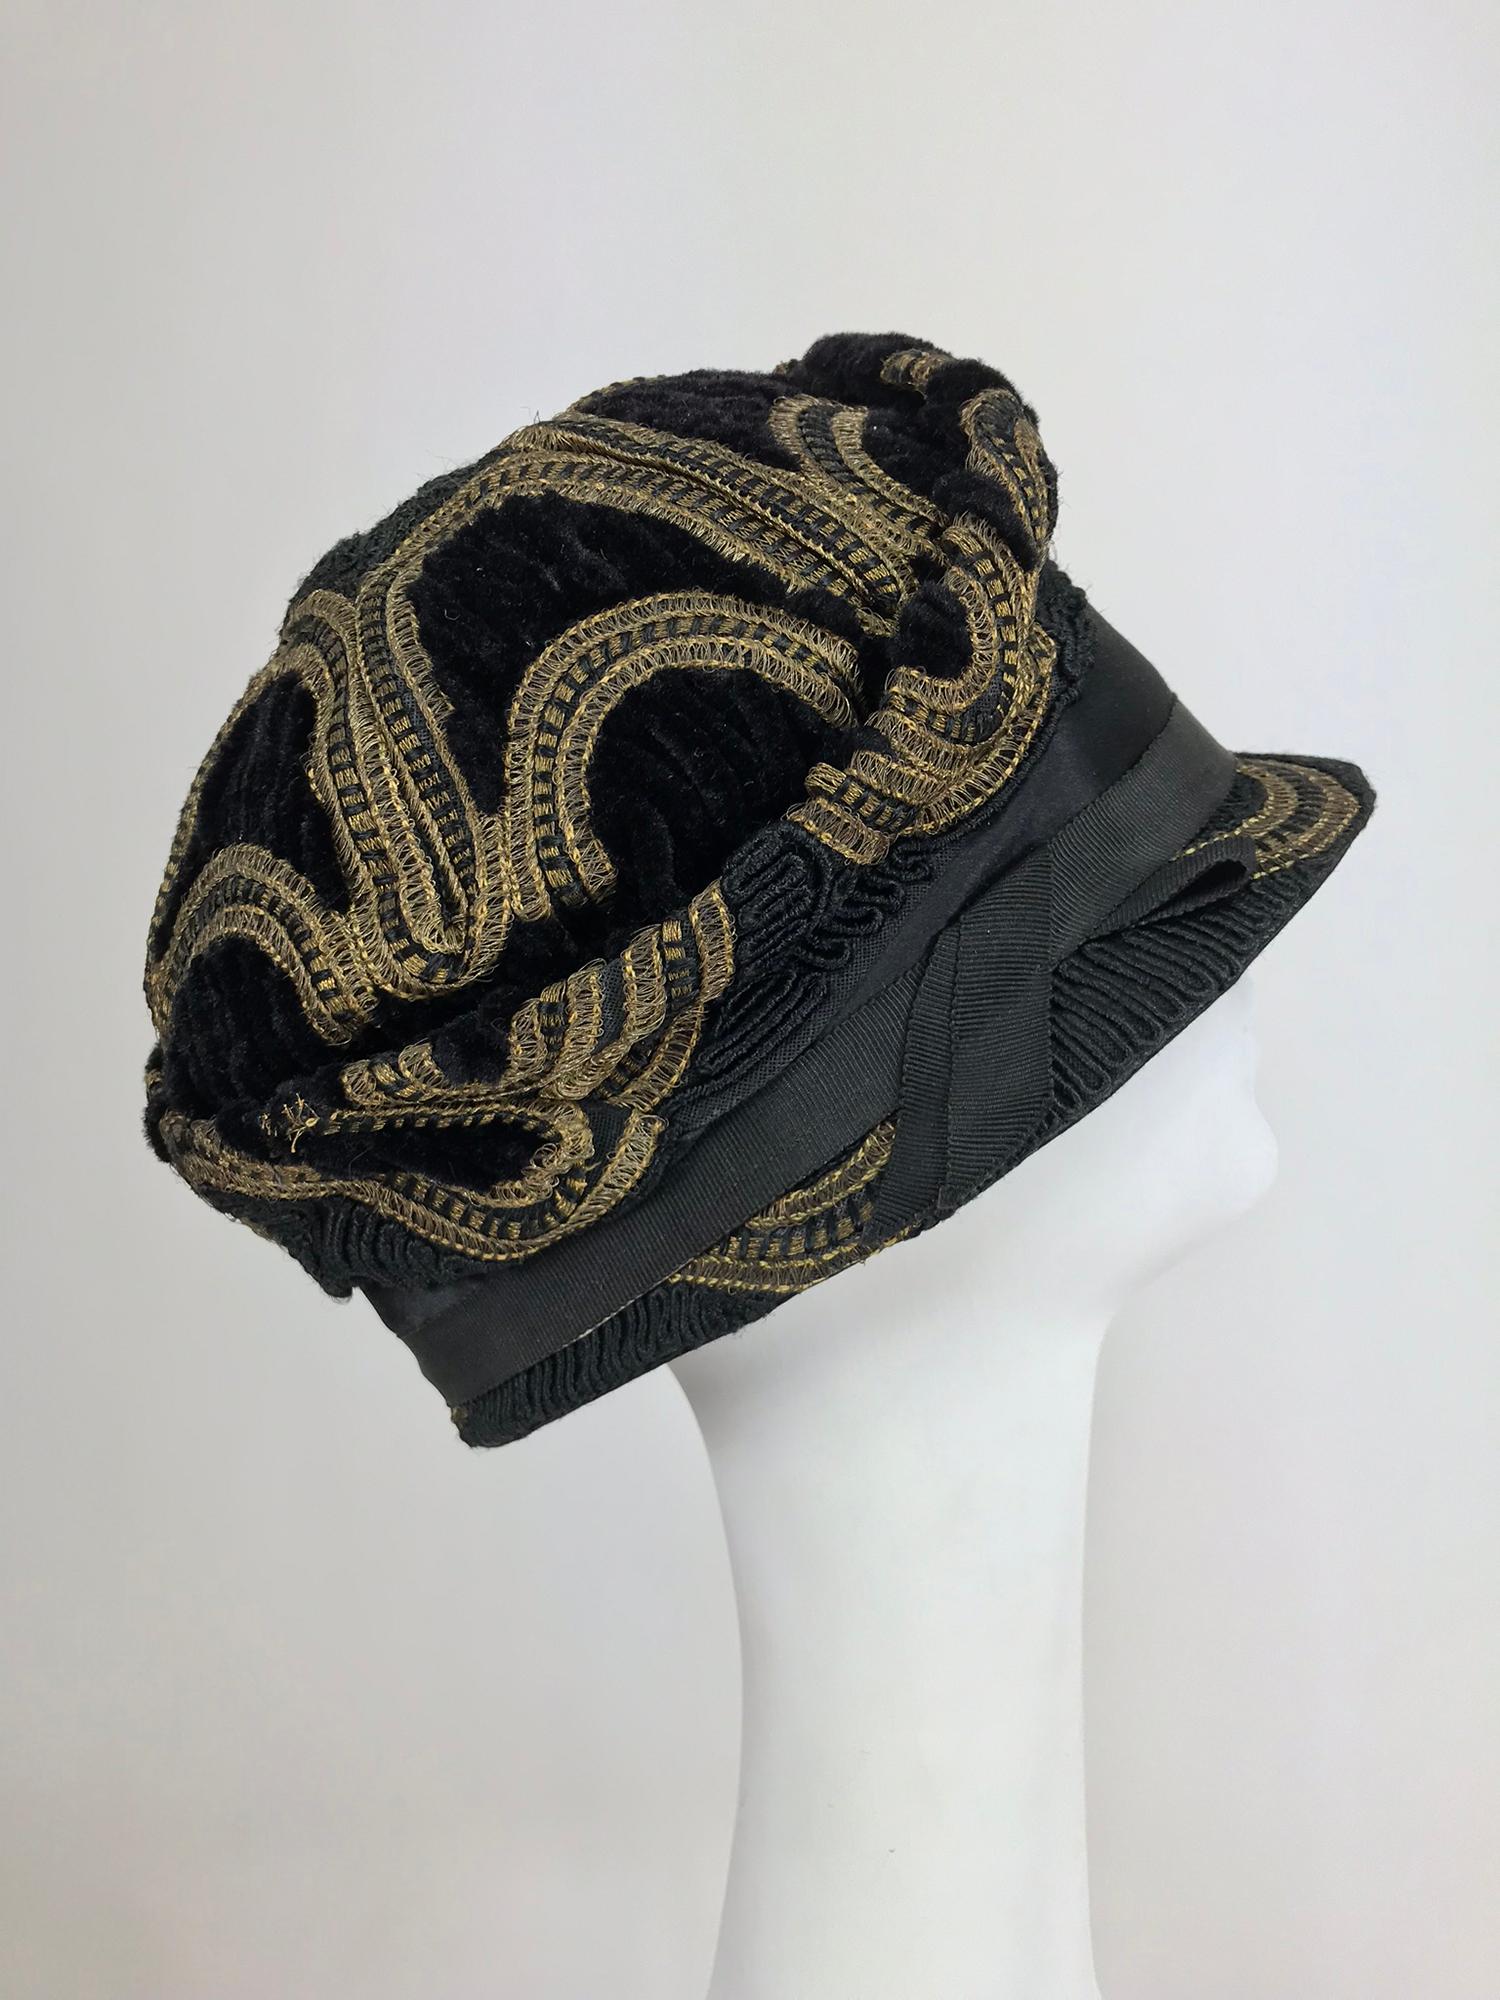 1920er Jahre Flapper Metallic Passepartout Cloche Hut. Dieser wunderschöne Hut ist aus schwarzem Chenille-Samt, schwarzem Satin und goldener Metallic-Borte handgefertigt. Der Hut hat eine geformte Krone und eine schmale Krempe. Innen mit